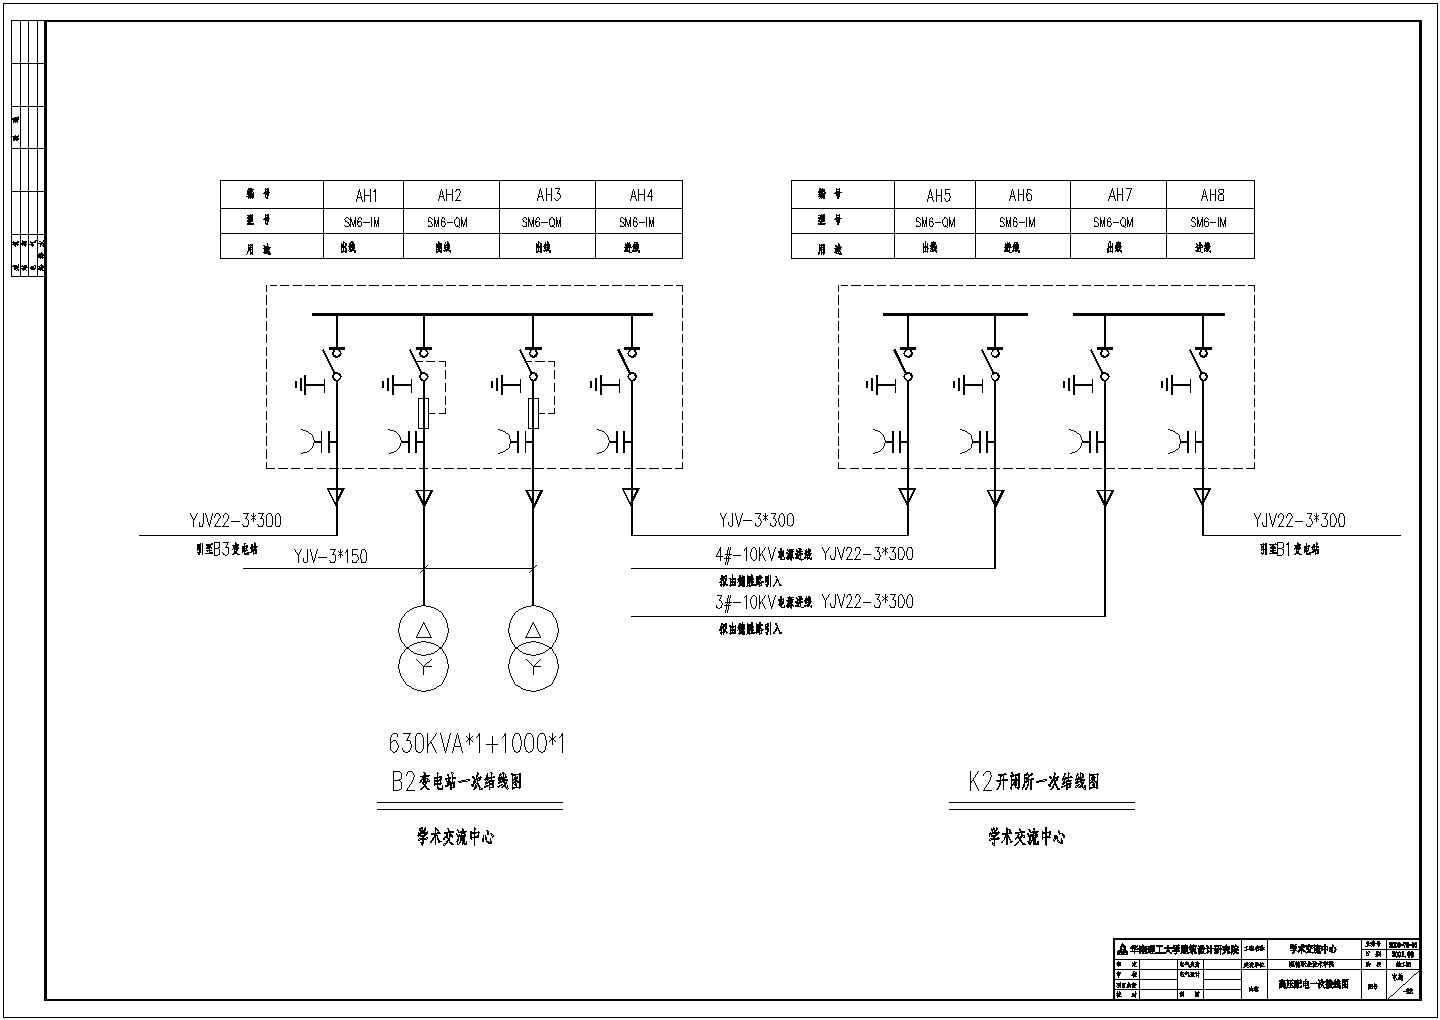 某集团港新区新建电厂高压配电系统全套CAD设计图纸